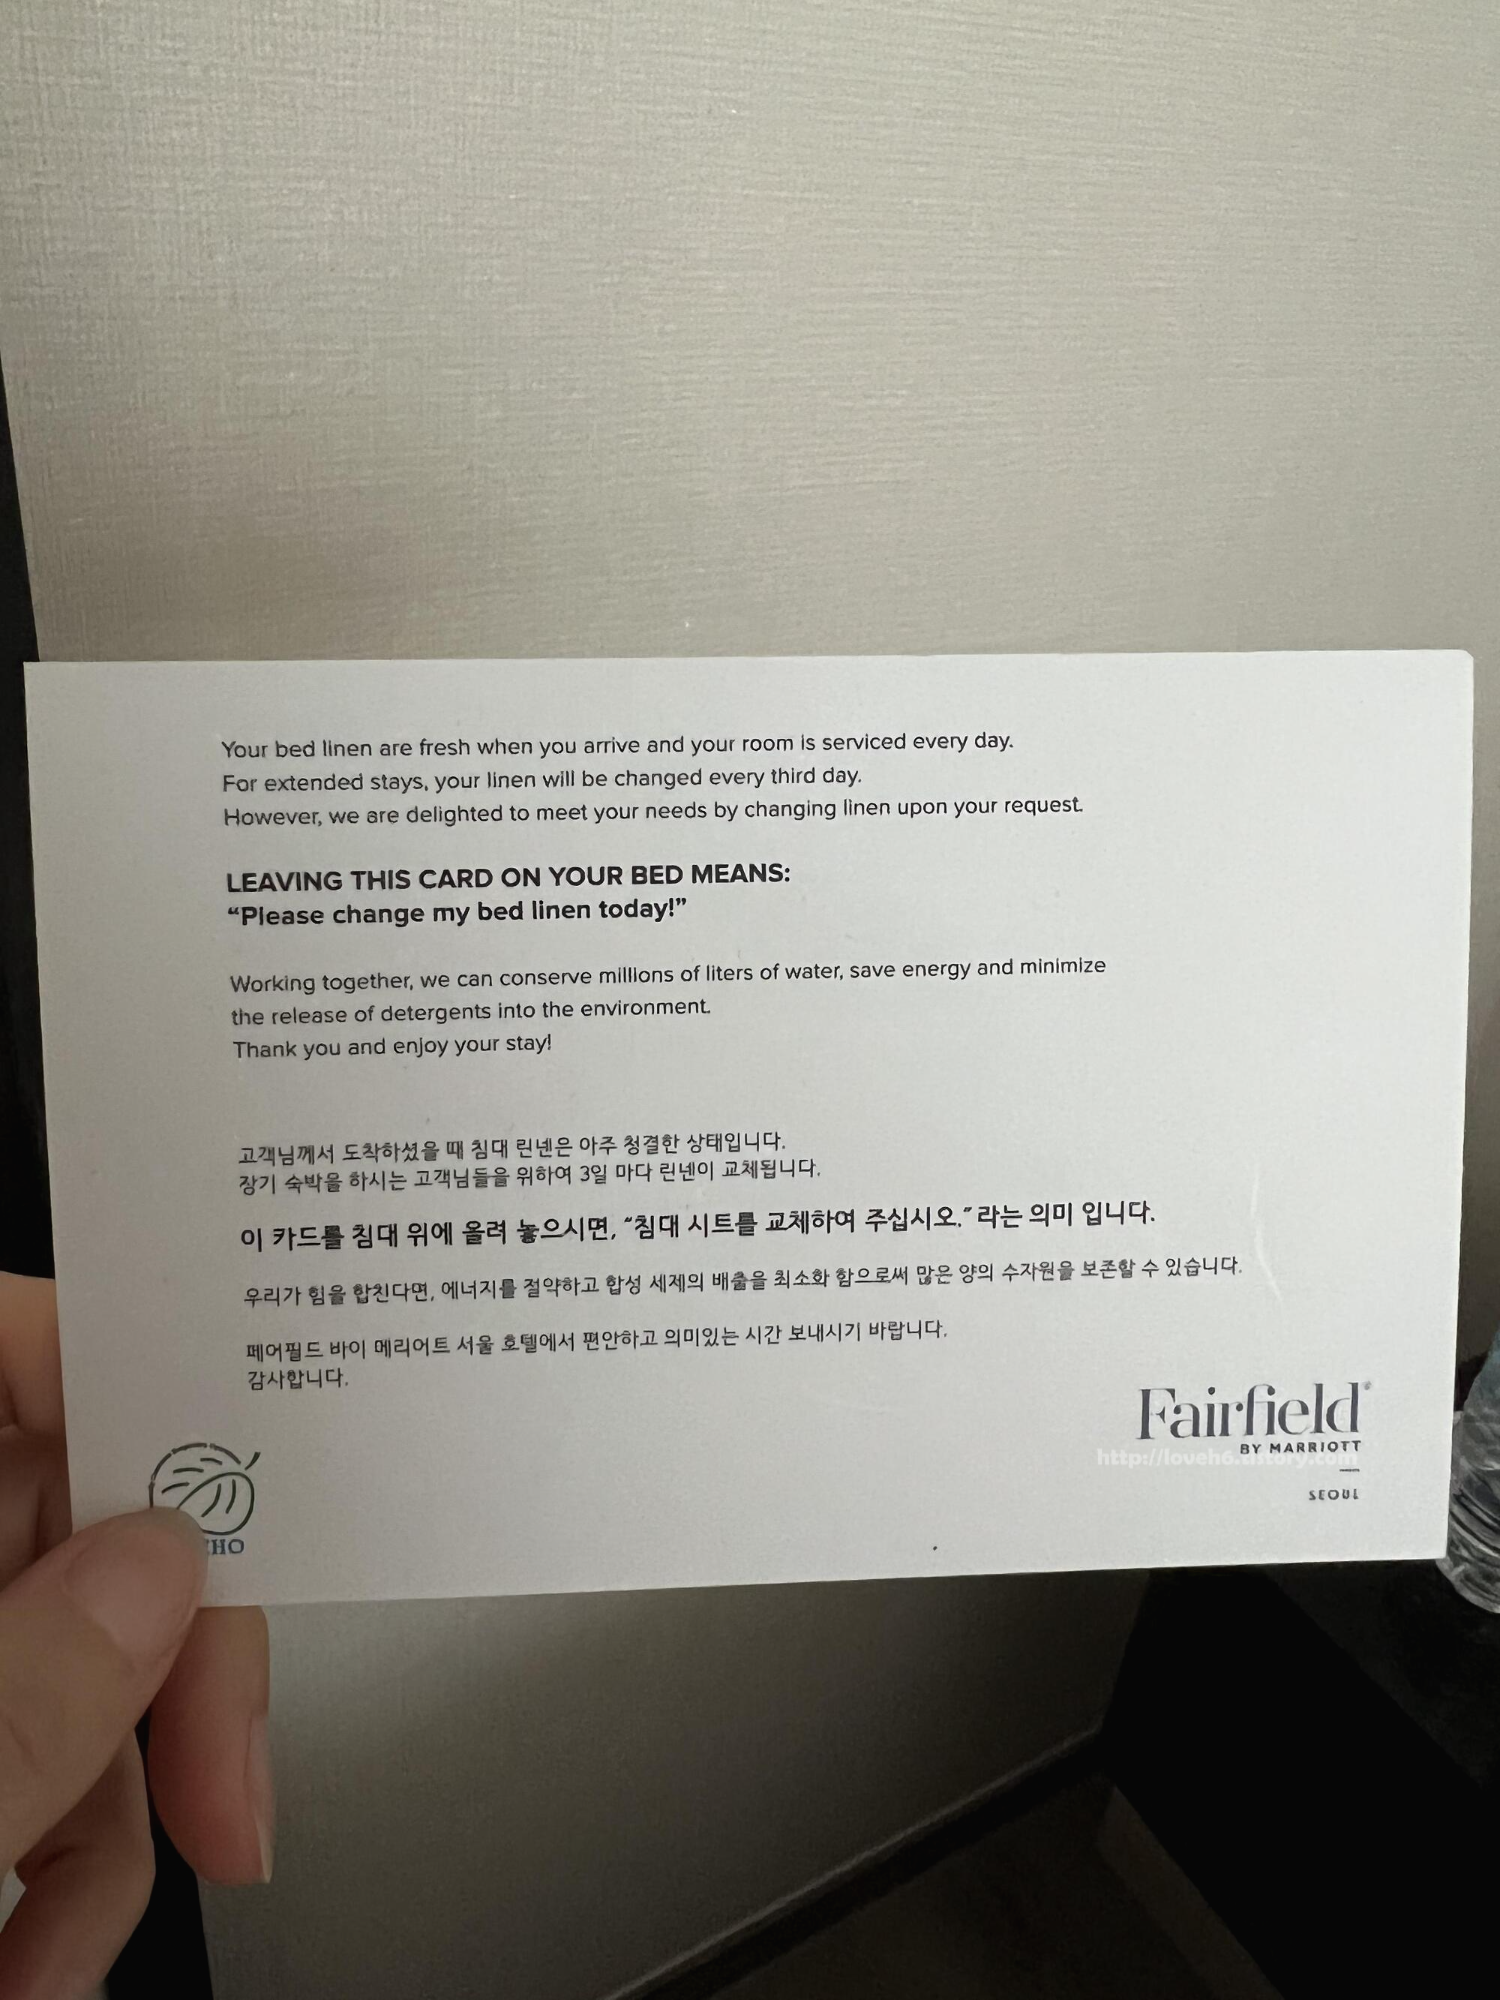 페어필드 바이 메리어트 서울 호텔-Fairfield by Marriott Seoul Hotel-영등포 호텔
침대 시트 교체 원하시는 분은

숙소에 카드가 있는데 그 카드를 침대 위에 올려놓으시면 시트 교체 가능합니다

호캉스 느낌까지는 아니지만

한 번씩 이용하기 나쁘지 않더라구요

오늘도 고생들 많으셨어요

좋은 밤 보내세요^-^